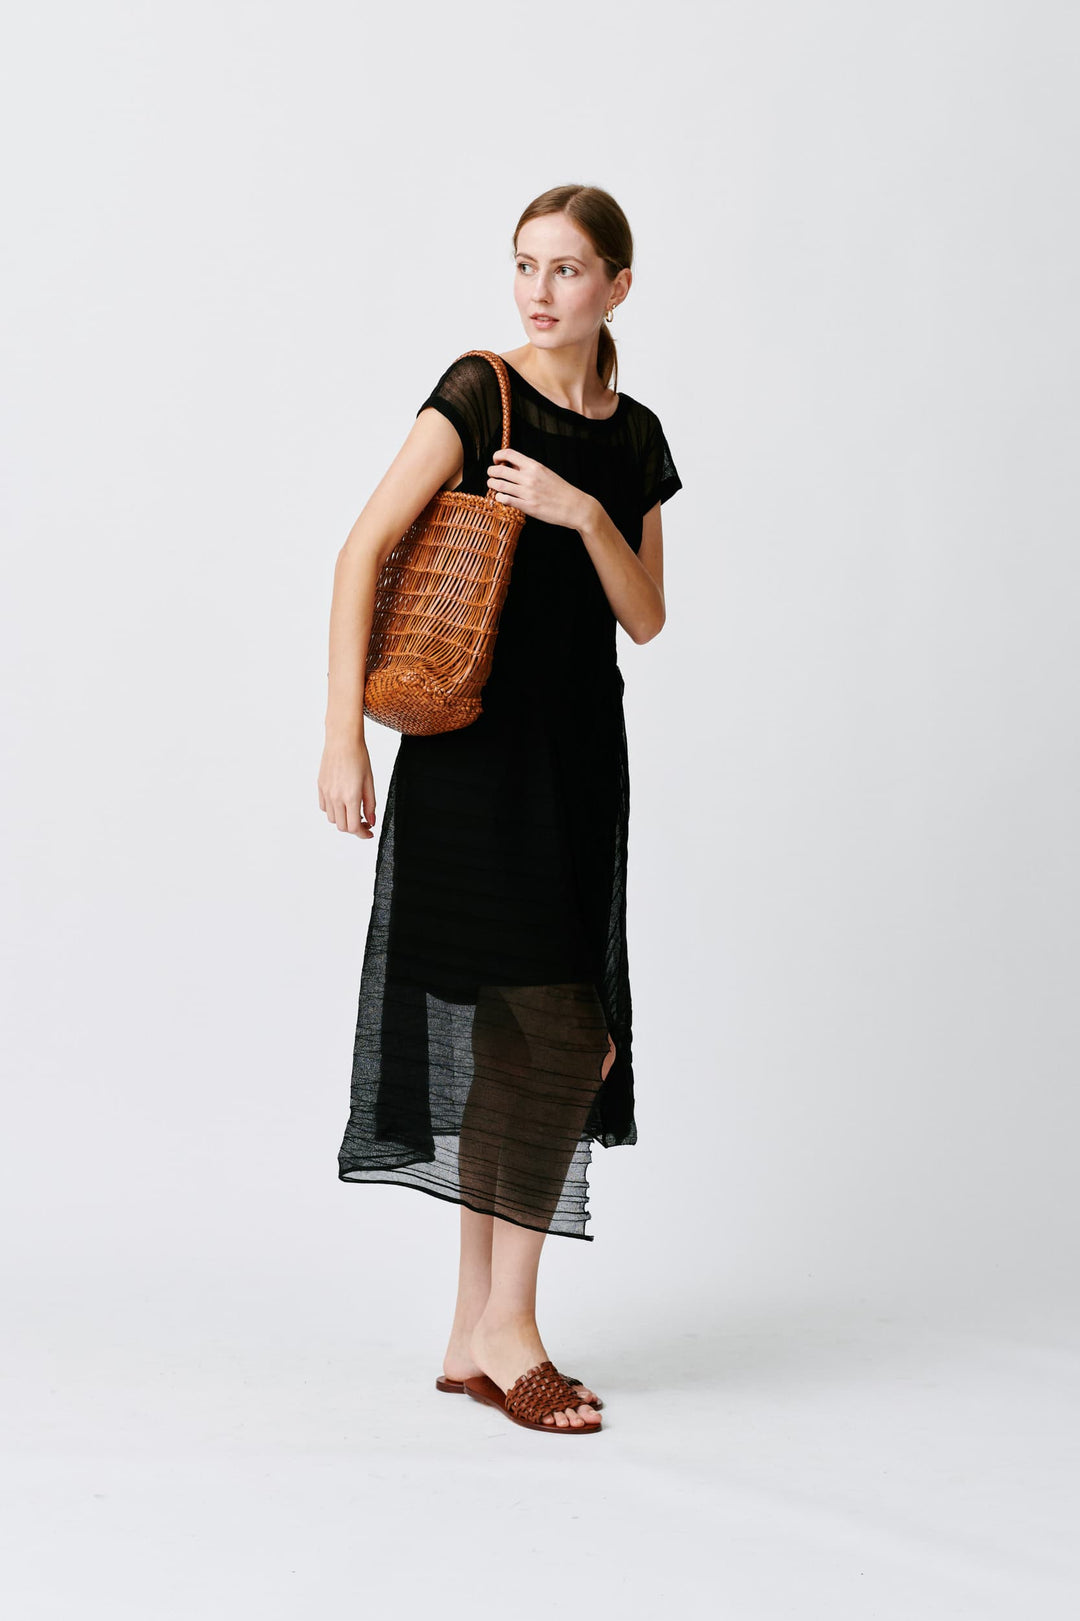 Dragon Diffusion - EW Corso Tan Woven Leather Bag